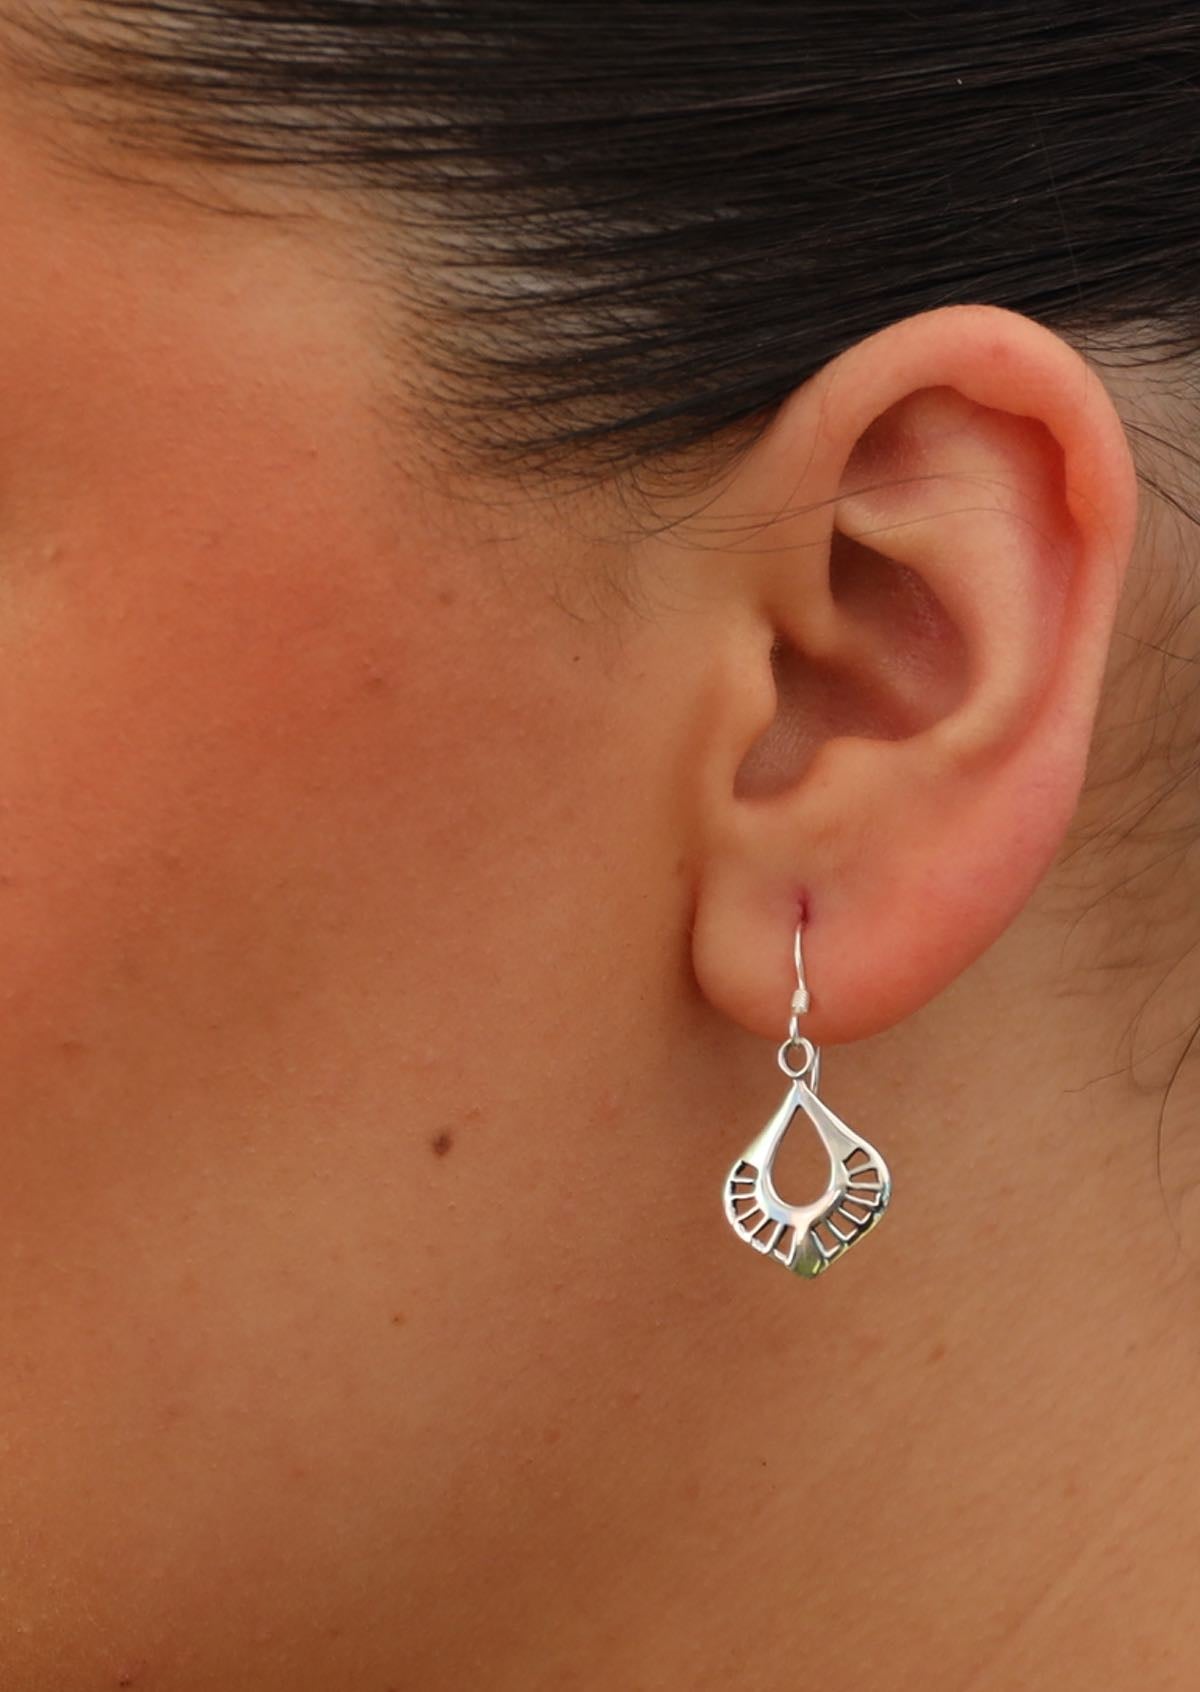 art nouveau style dangly earring on woman's ear